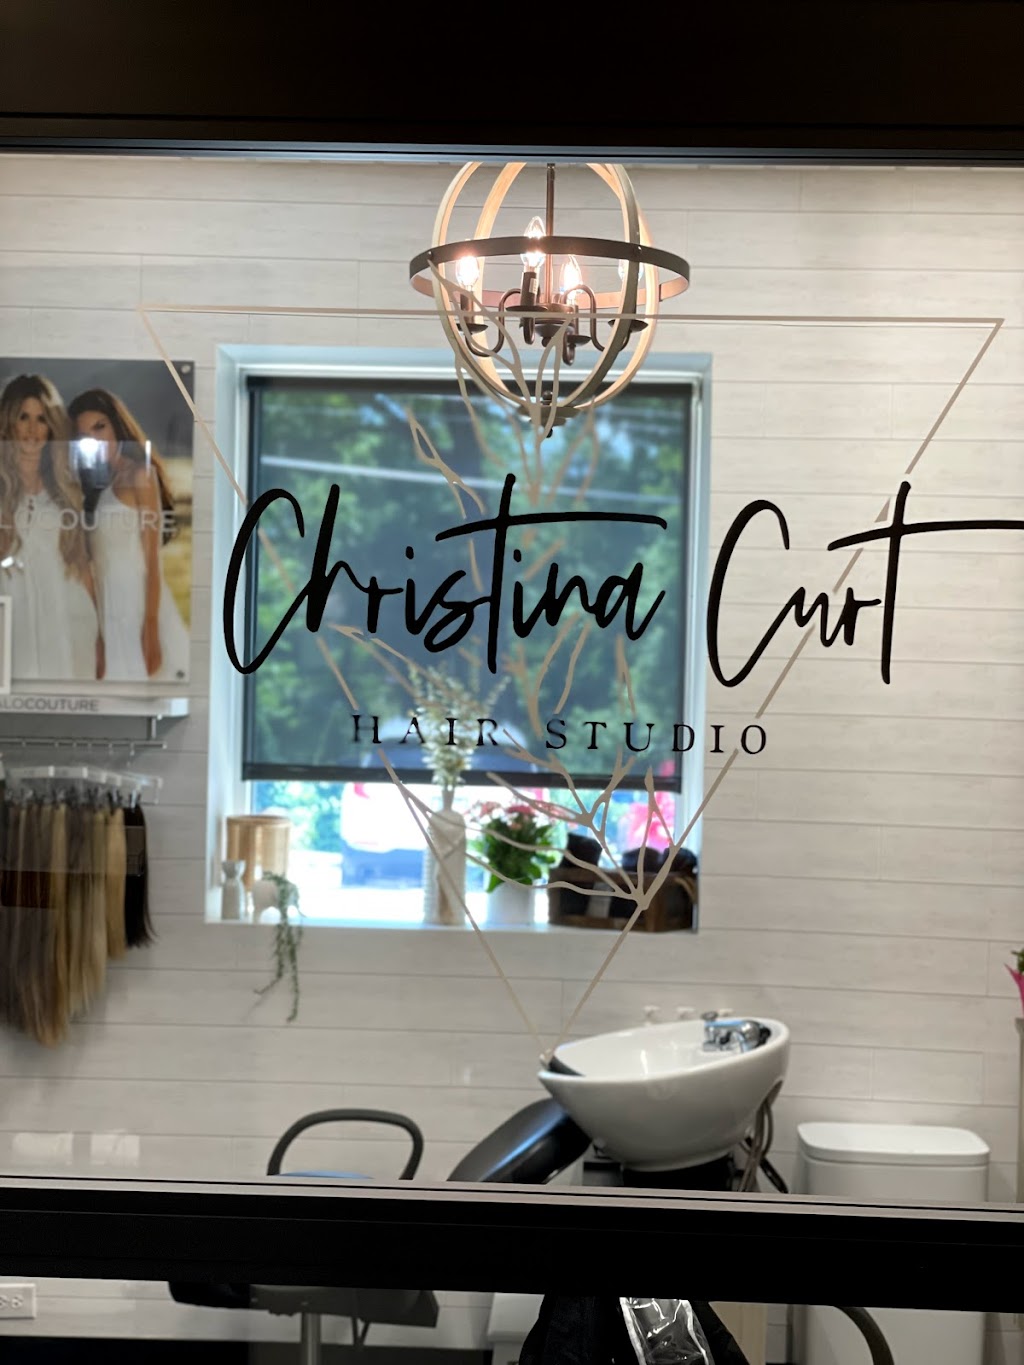 Christina Curt Hair Studio: Clean Beauty Hairstylist | 2802 Audubon Village Dr Suite 10, Audubon, PA 19403 | Phone: (610) 910-8445